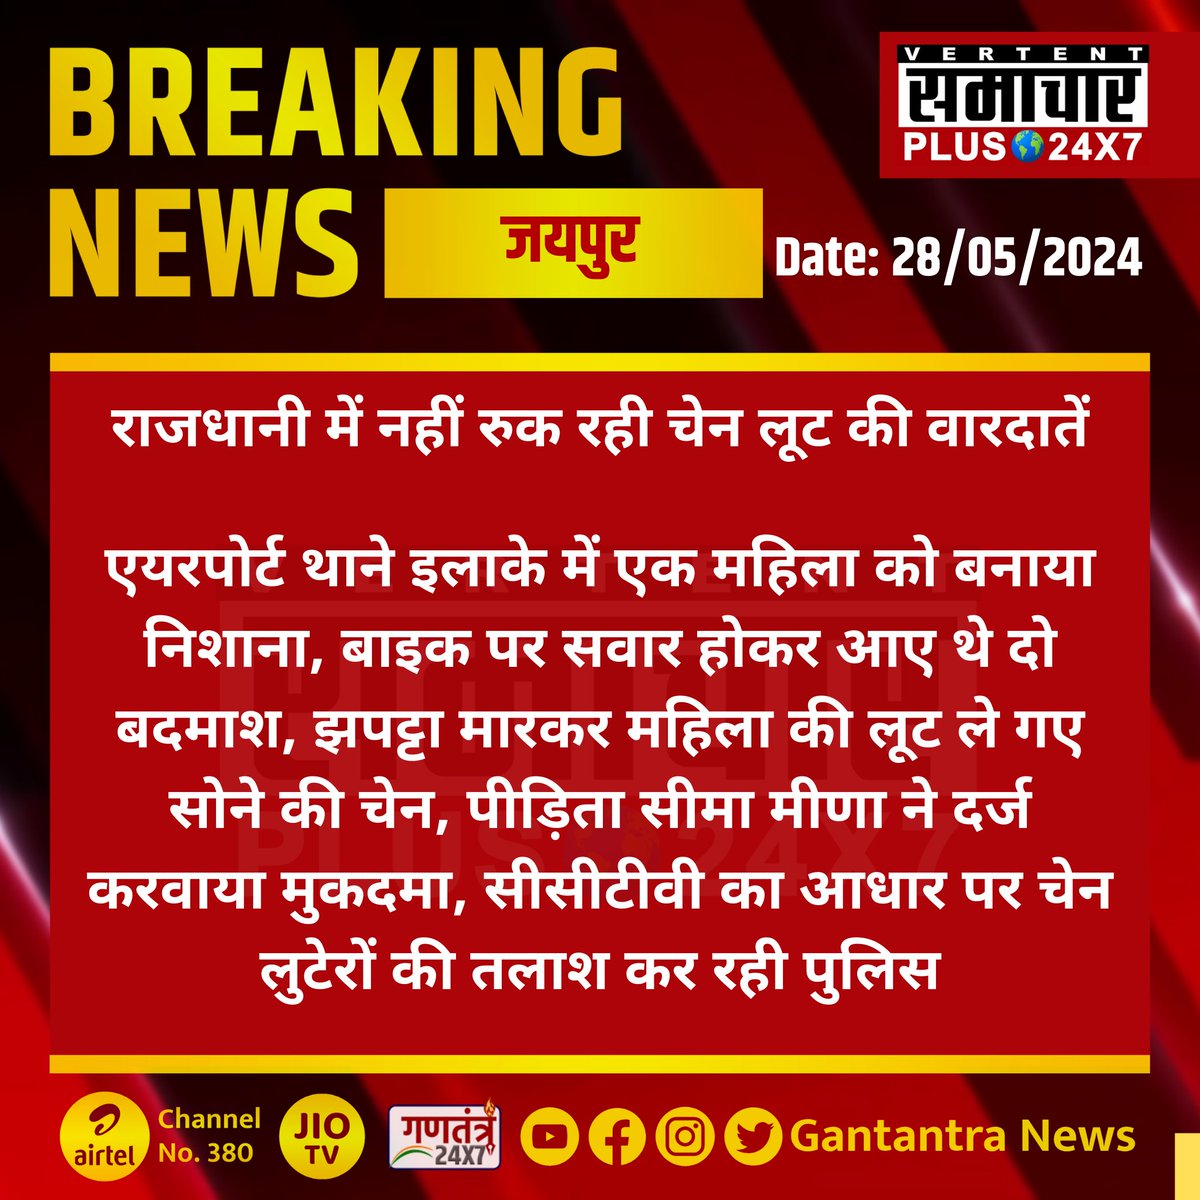 #जयपुर : राजधानी में नहीं रुक रही चेन लूट की वारदातें

एयरपोर्ट थाने इलाके में एक महिला को बनाया निशाना...
#Jaipur #RajasthanNews #SamacharPlus @jaipur_police @PoliceRajasthan